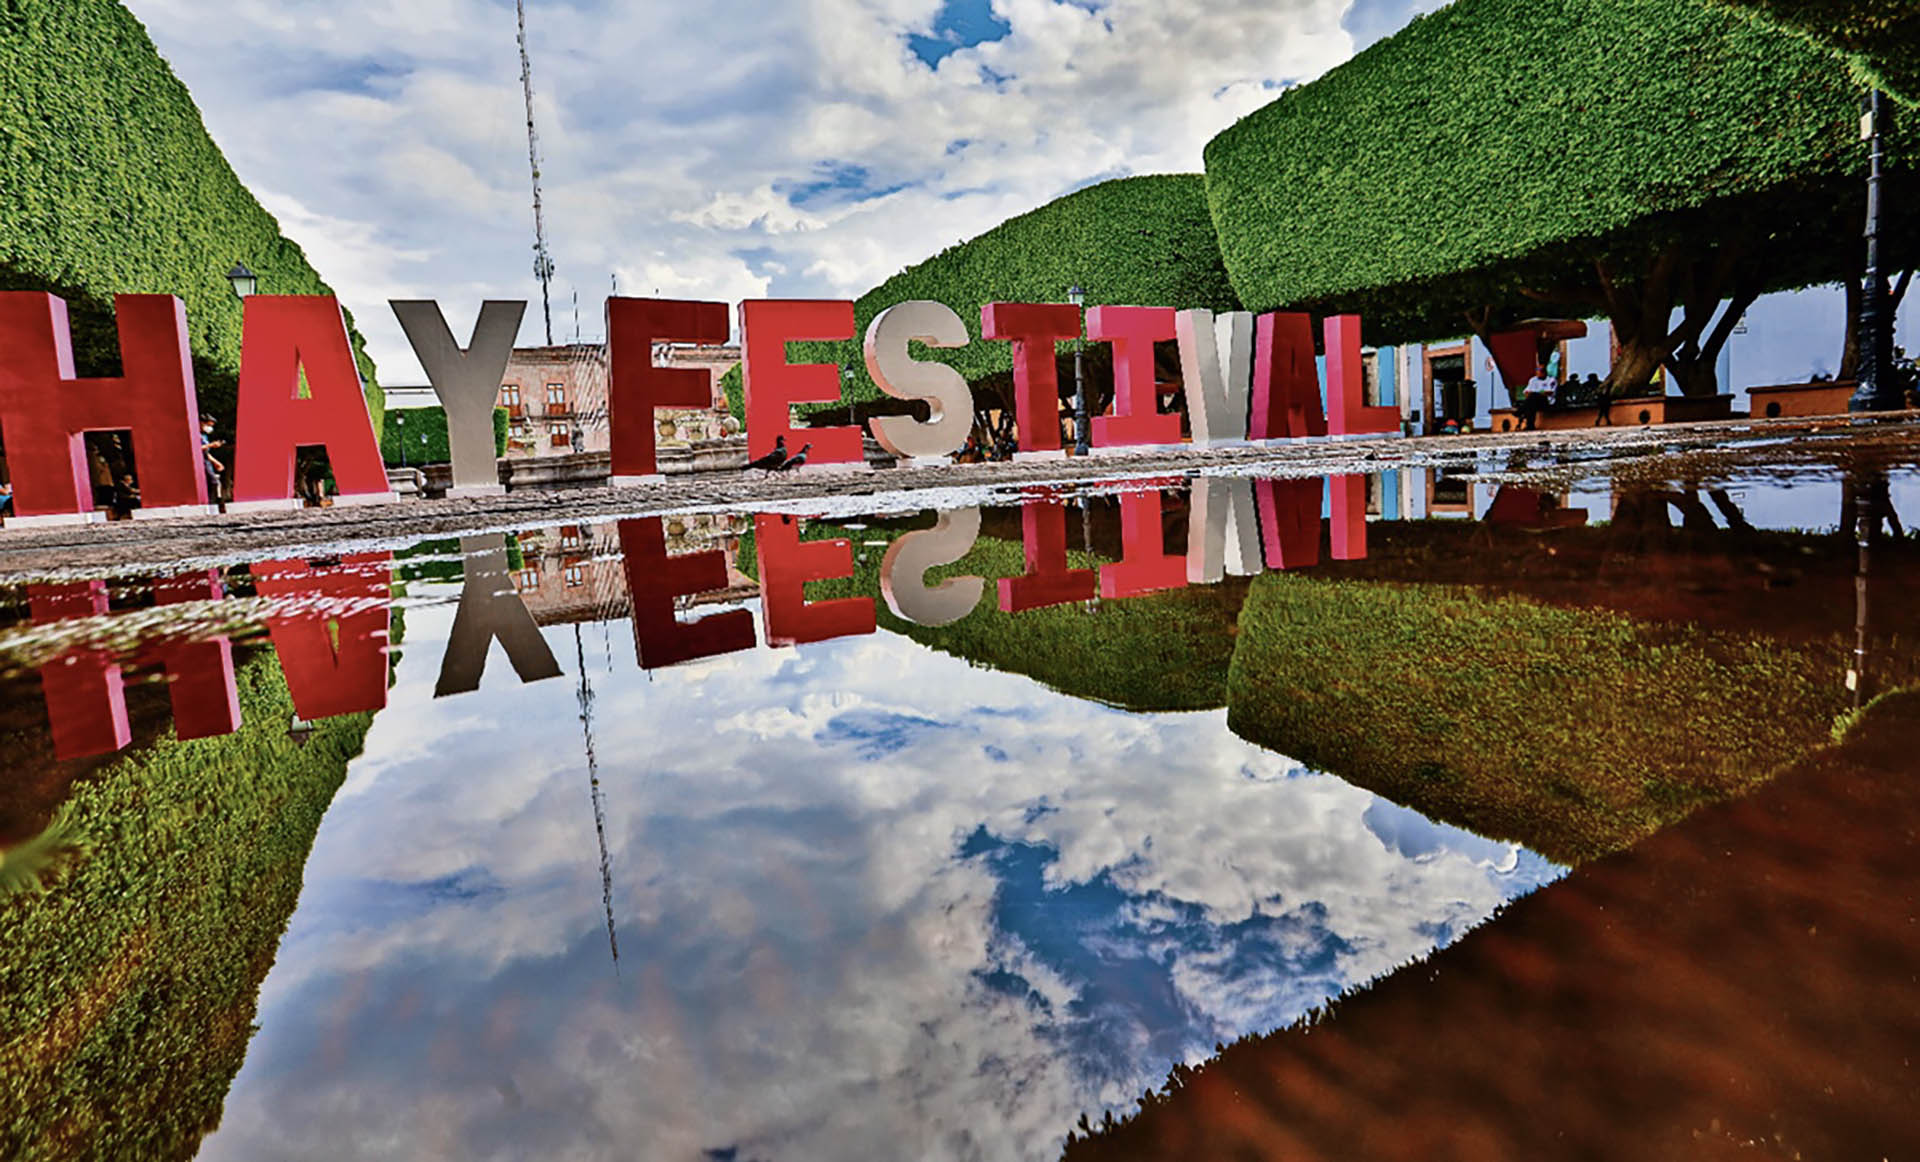 El Hay Festival cubrió de cultura el bello paisaje de Cartagena de Indias